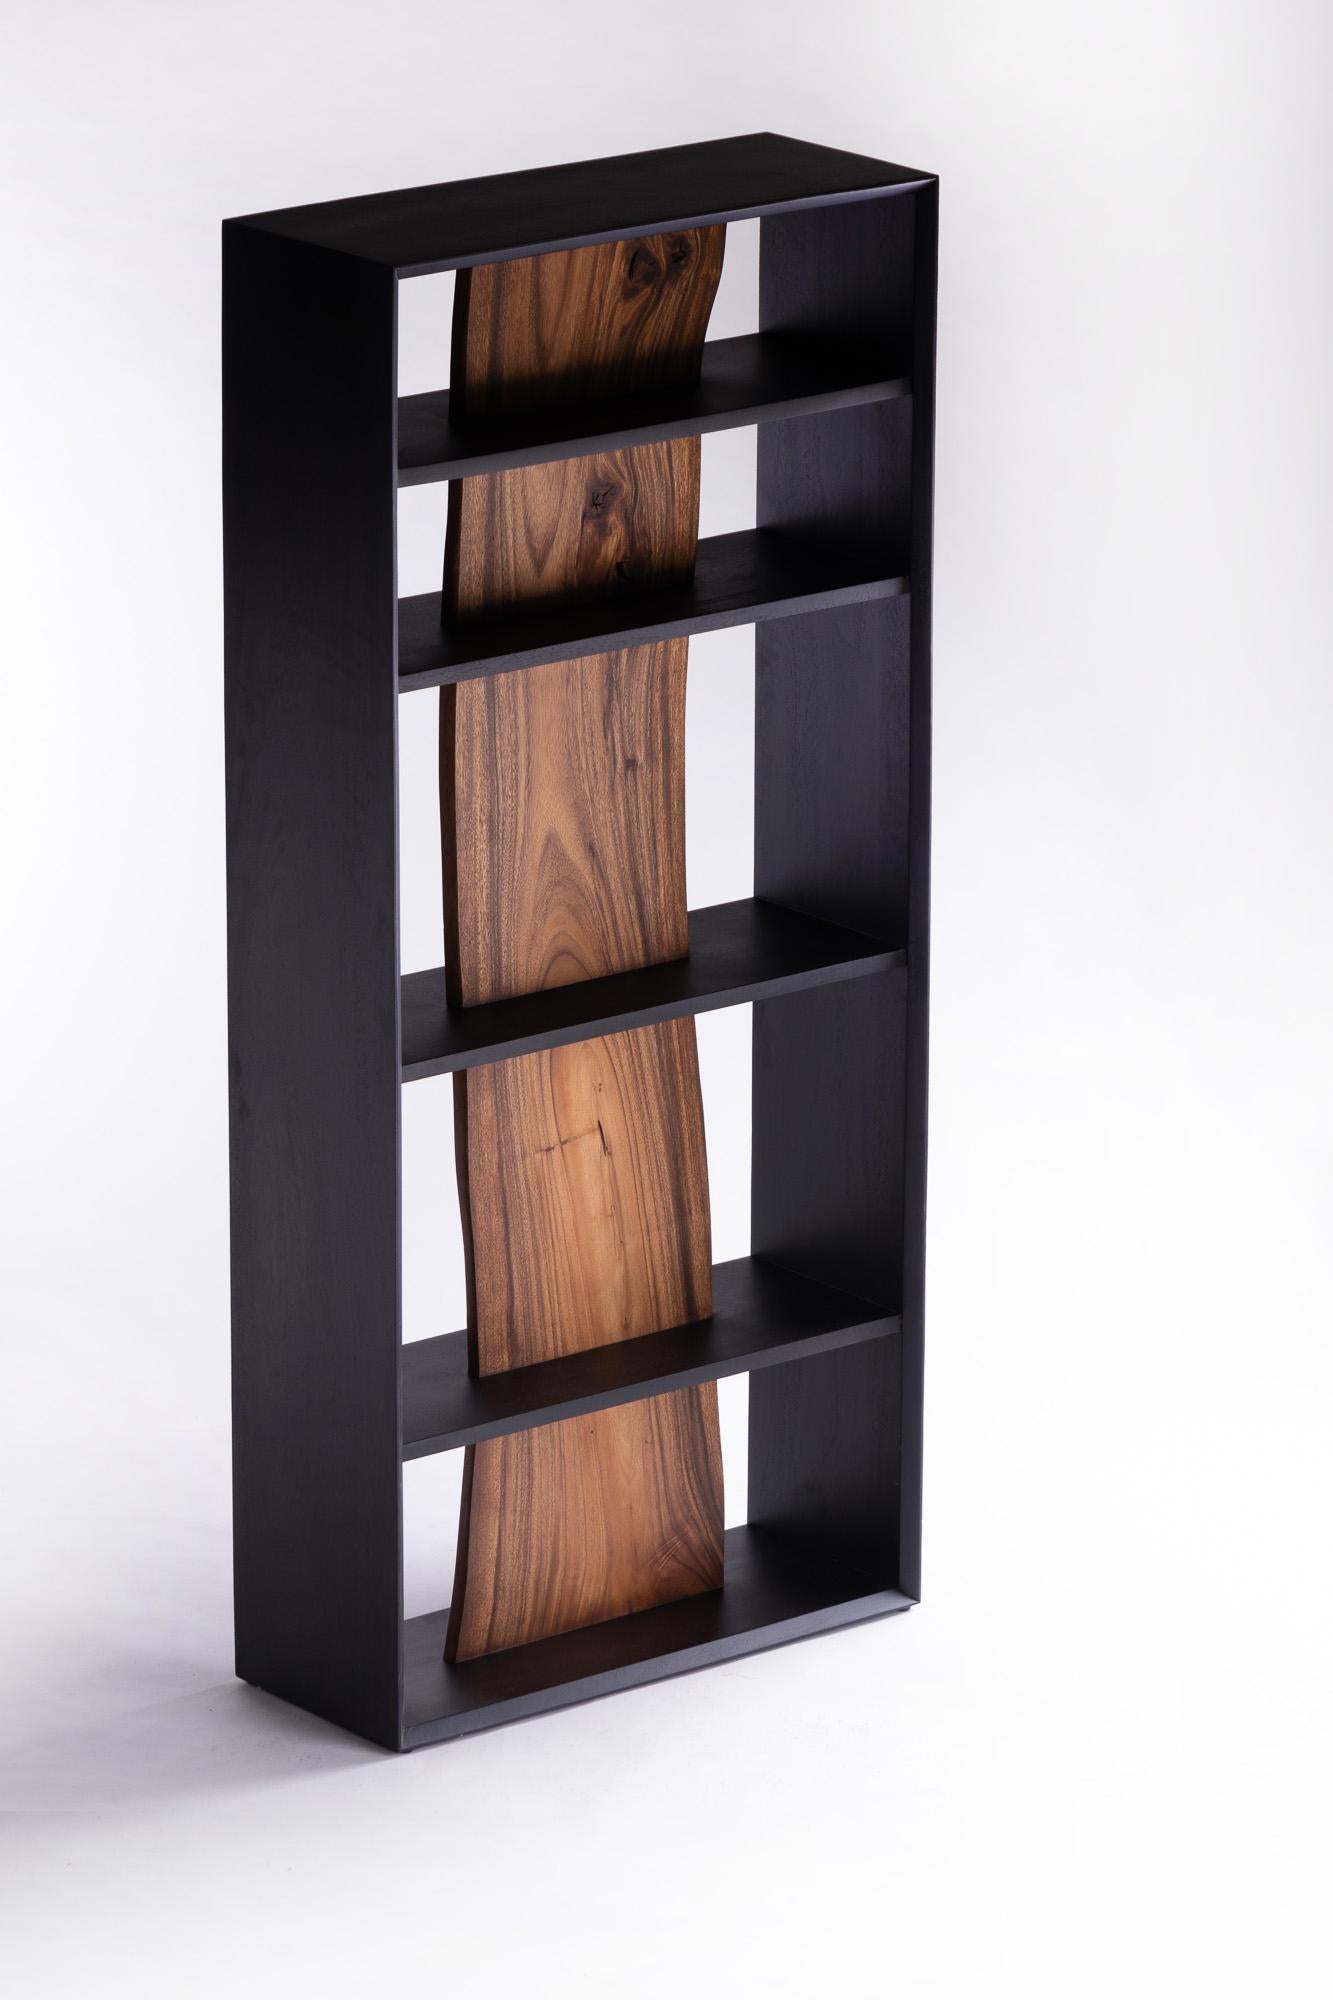 acacia wood shelves